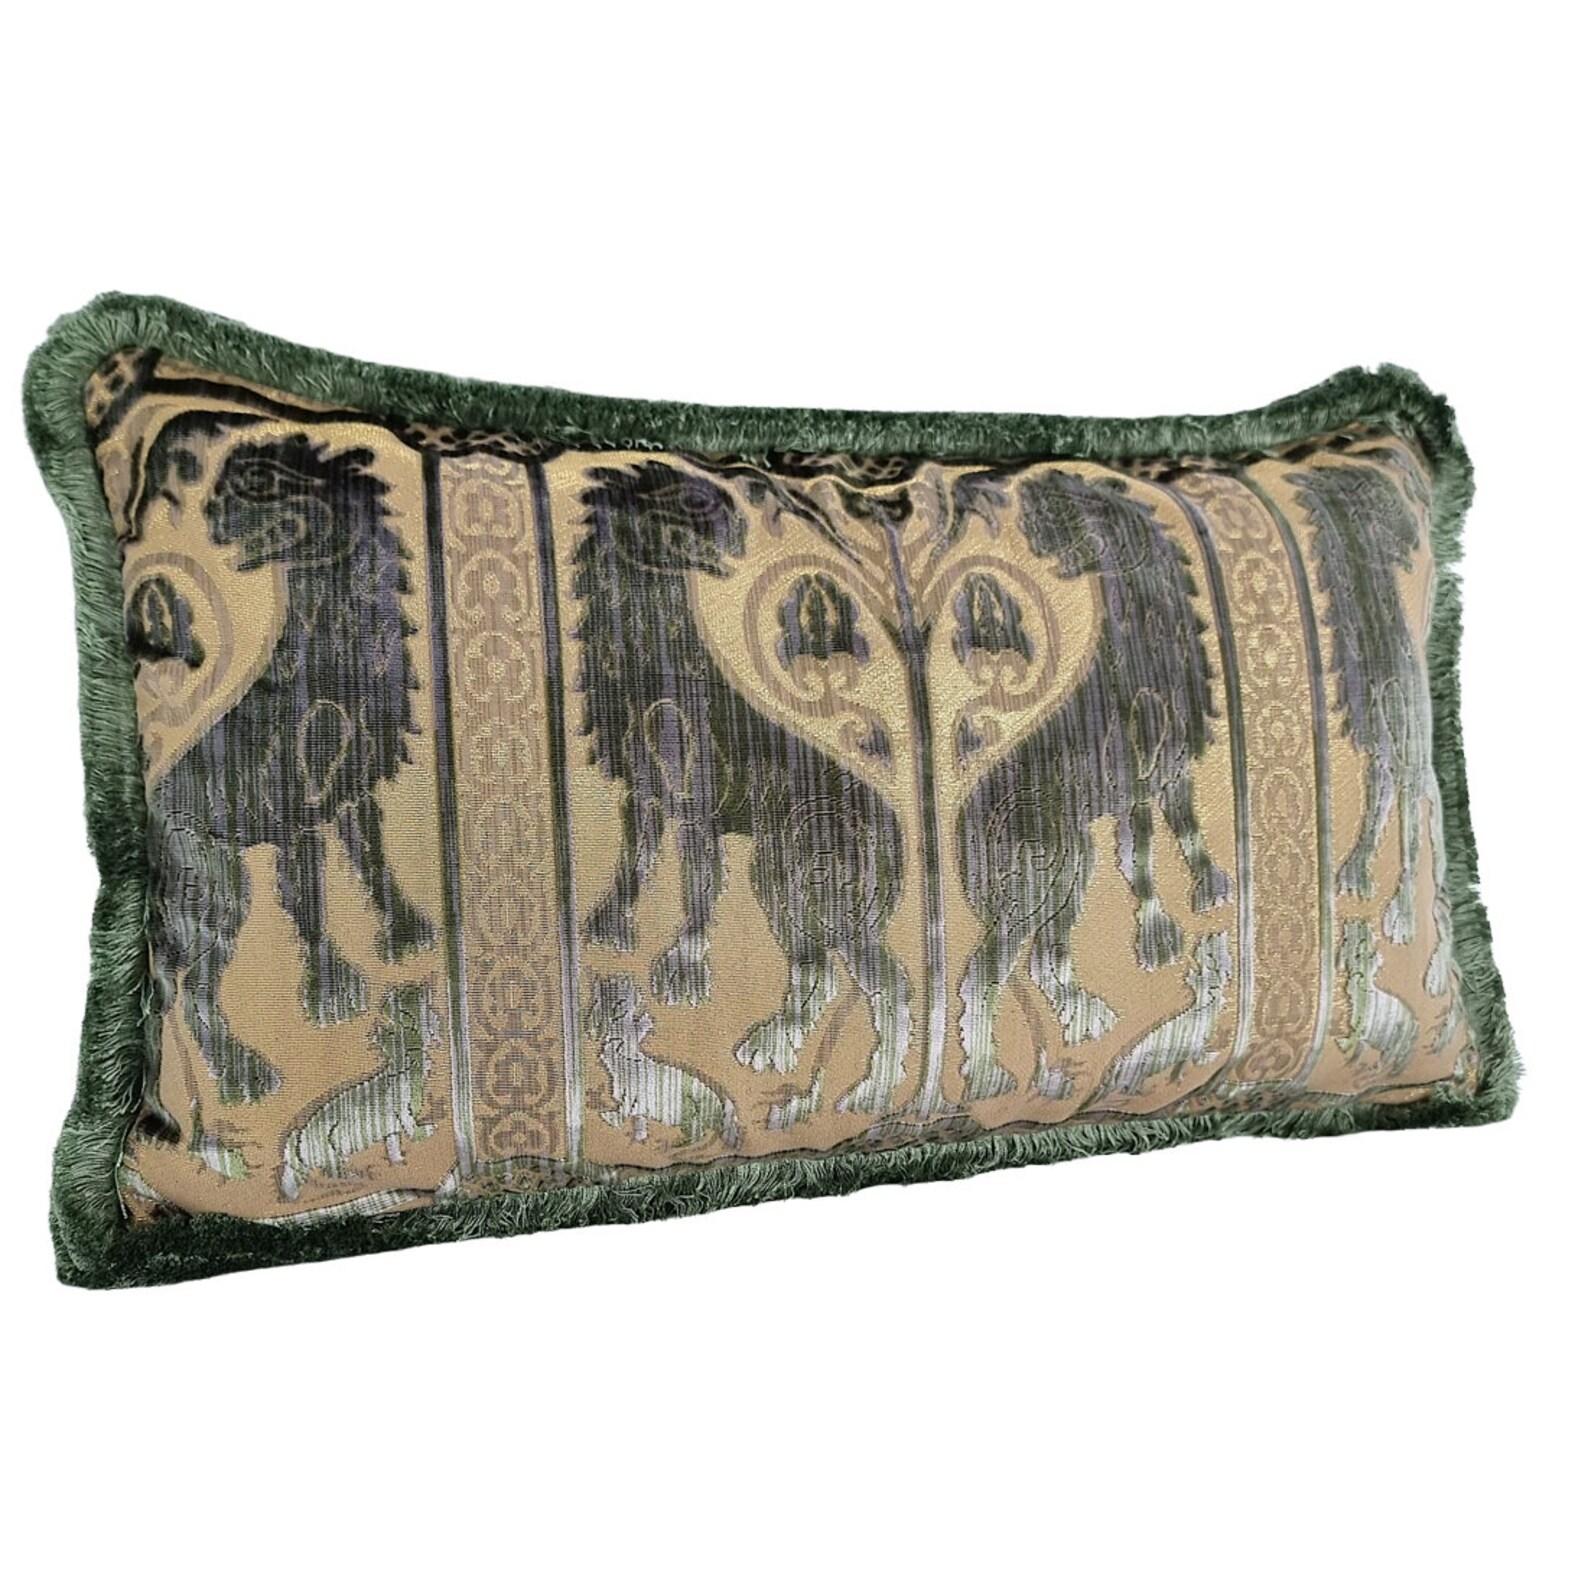 Ce magnifique coussin lombaire est fabriqué à la main à partir de l'emblématique velours de soie Leoni Bizantini - design des XIIe et XIVe siècles - de couleur vert olive provenant de Tessitura Luigi Bevilacqua, l'historique et prestigieuse